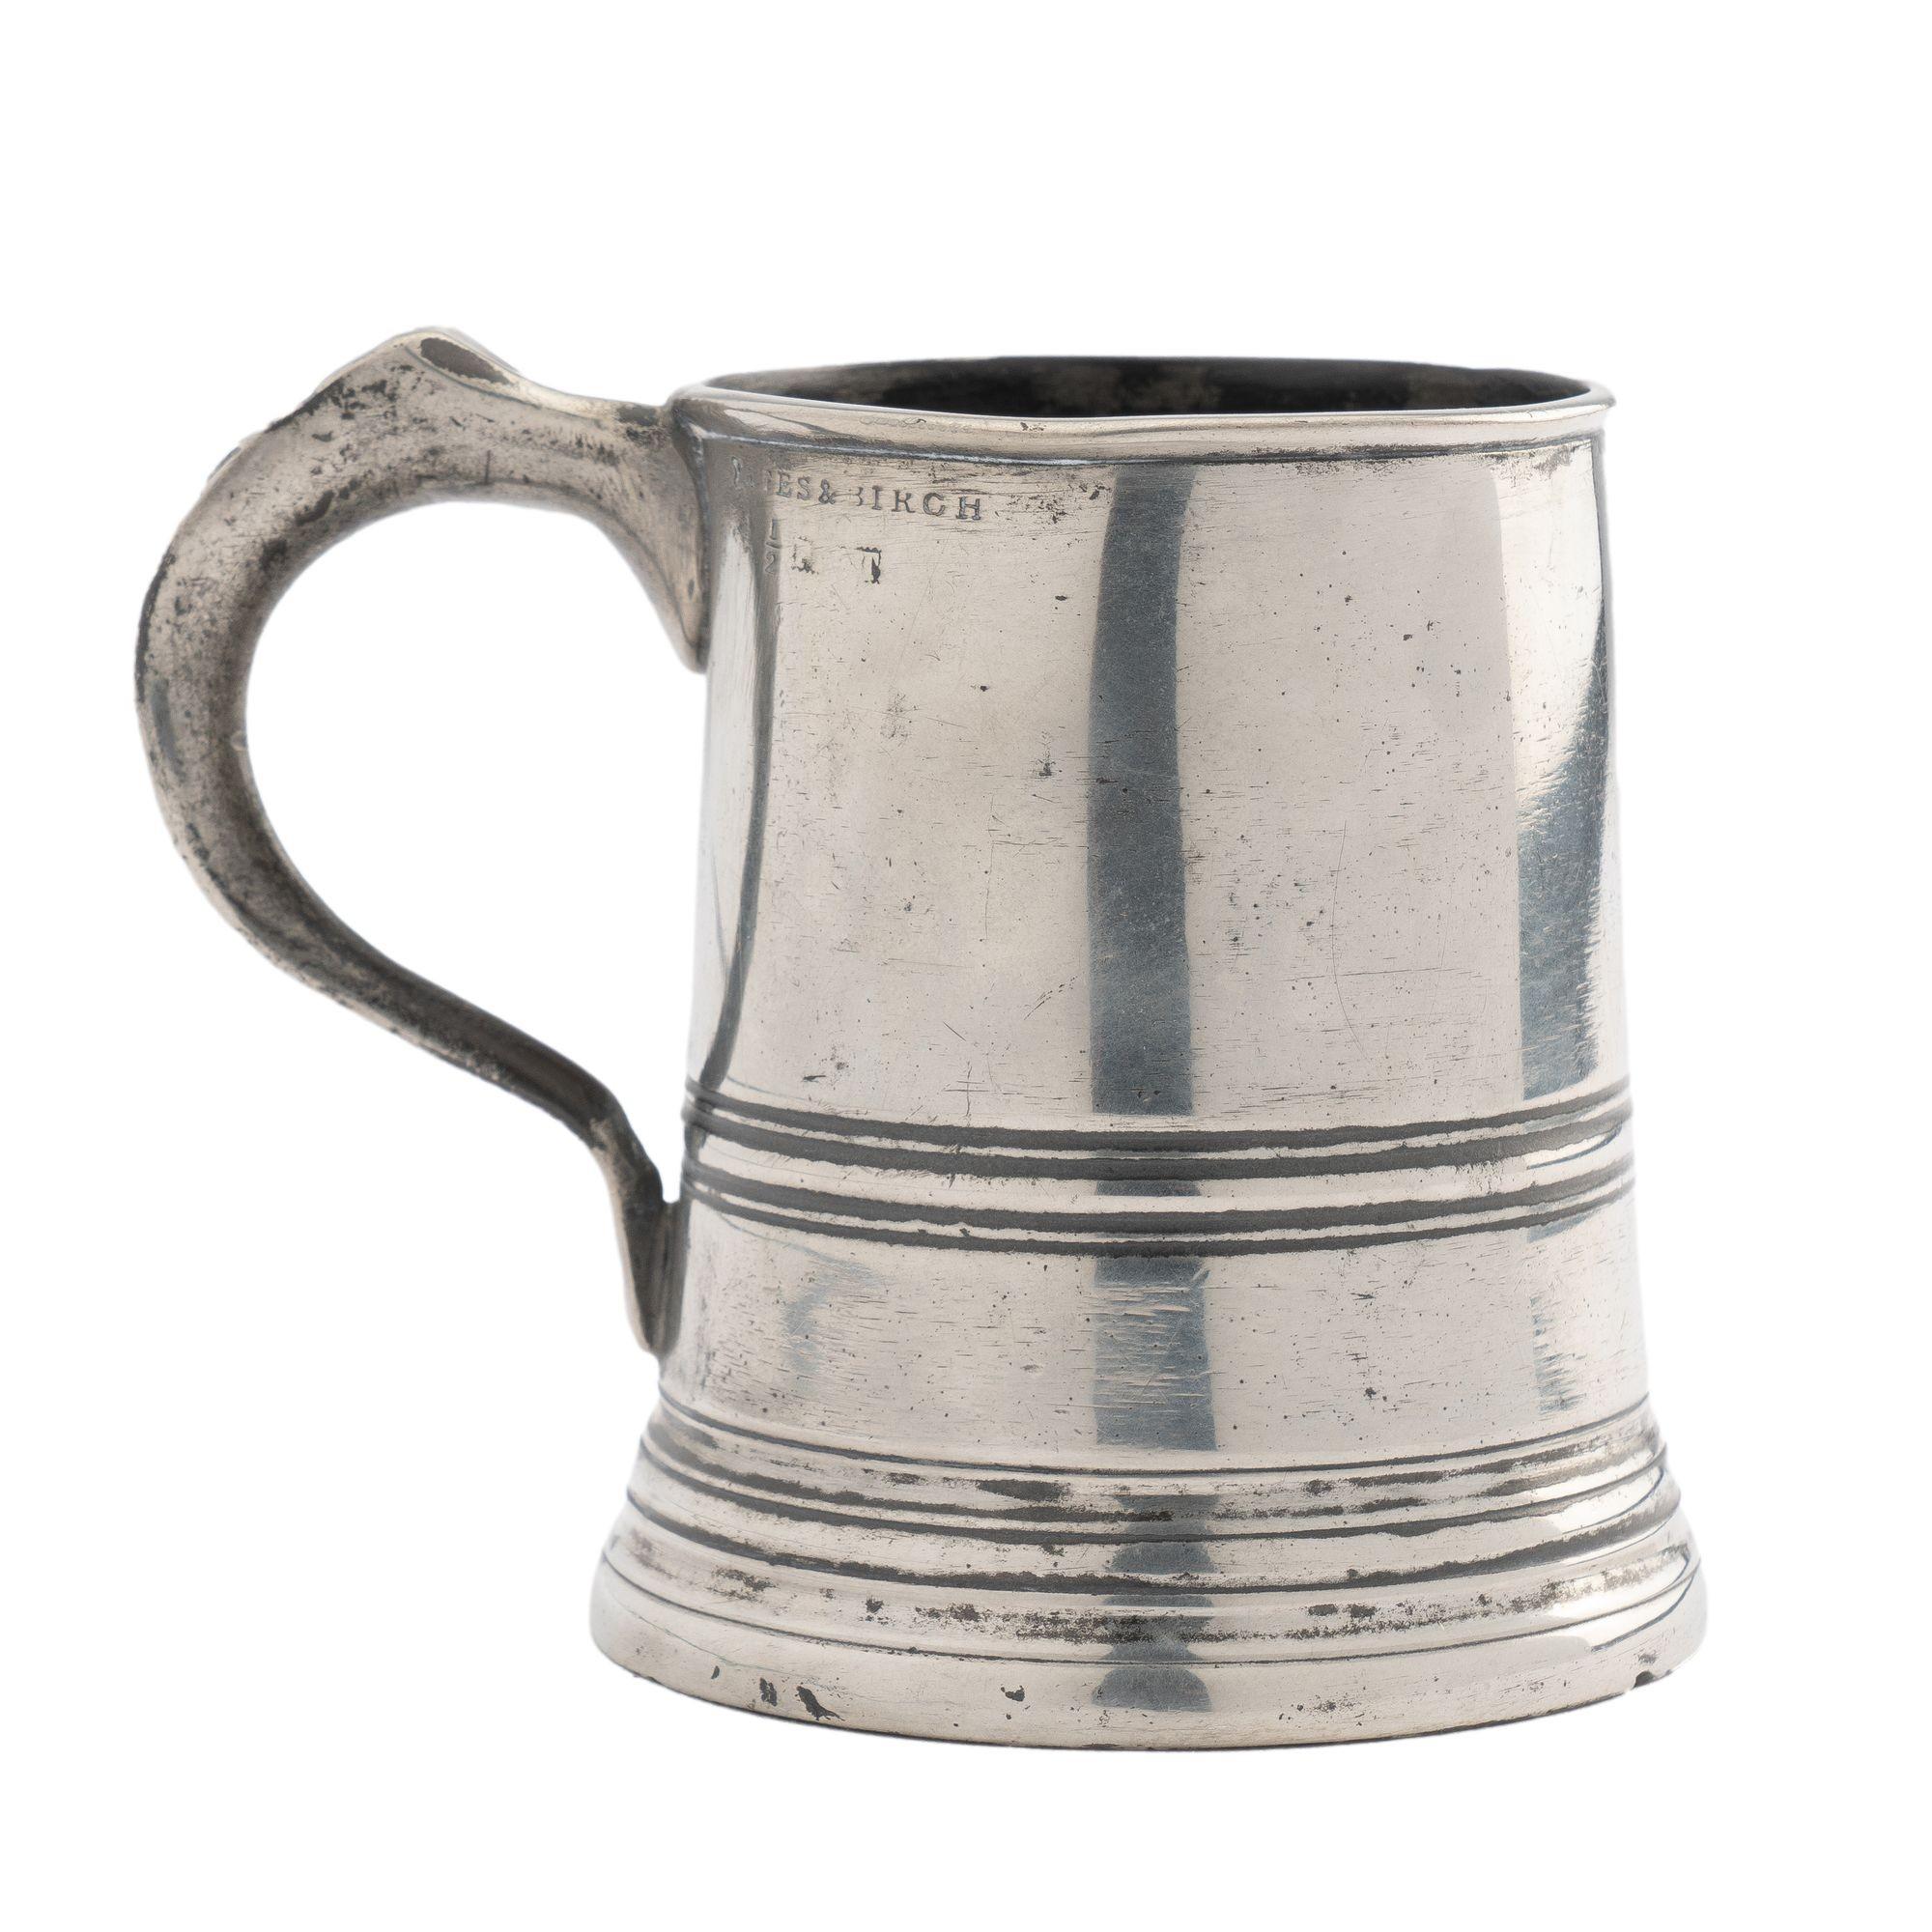 Yates & Birch Pewter Half Pint Mug, 1839-1860 For Sale 1